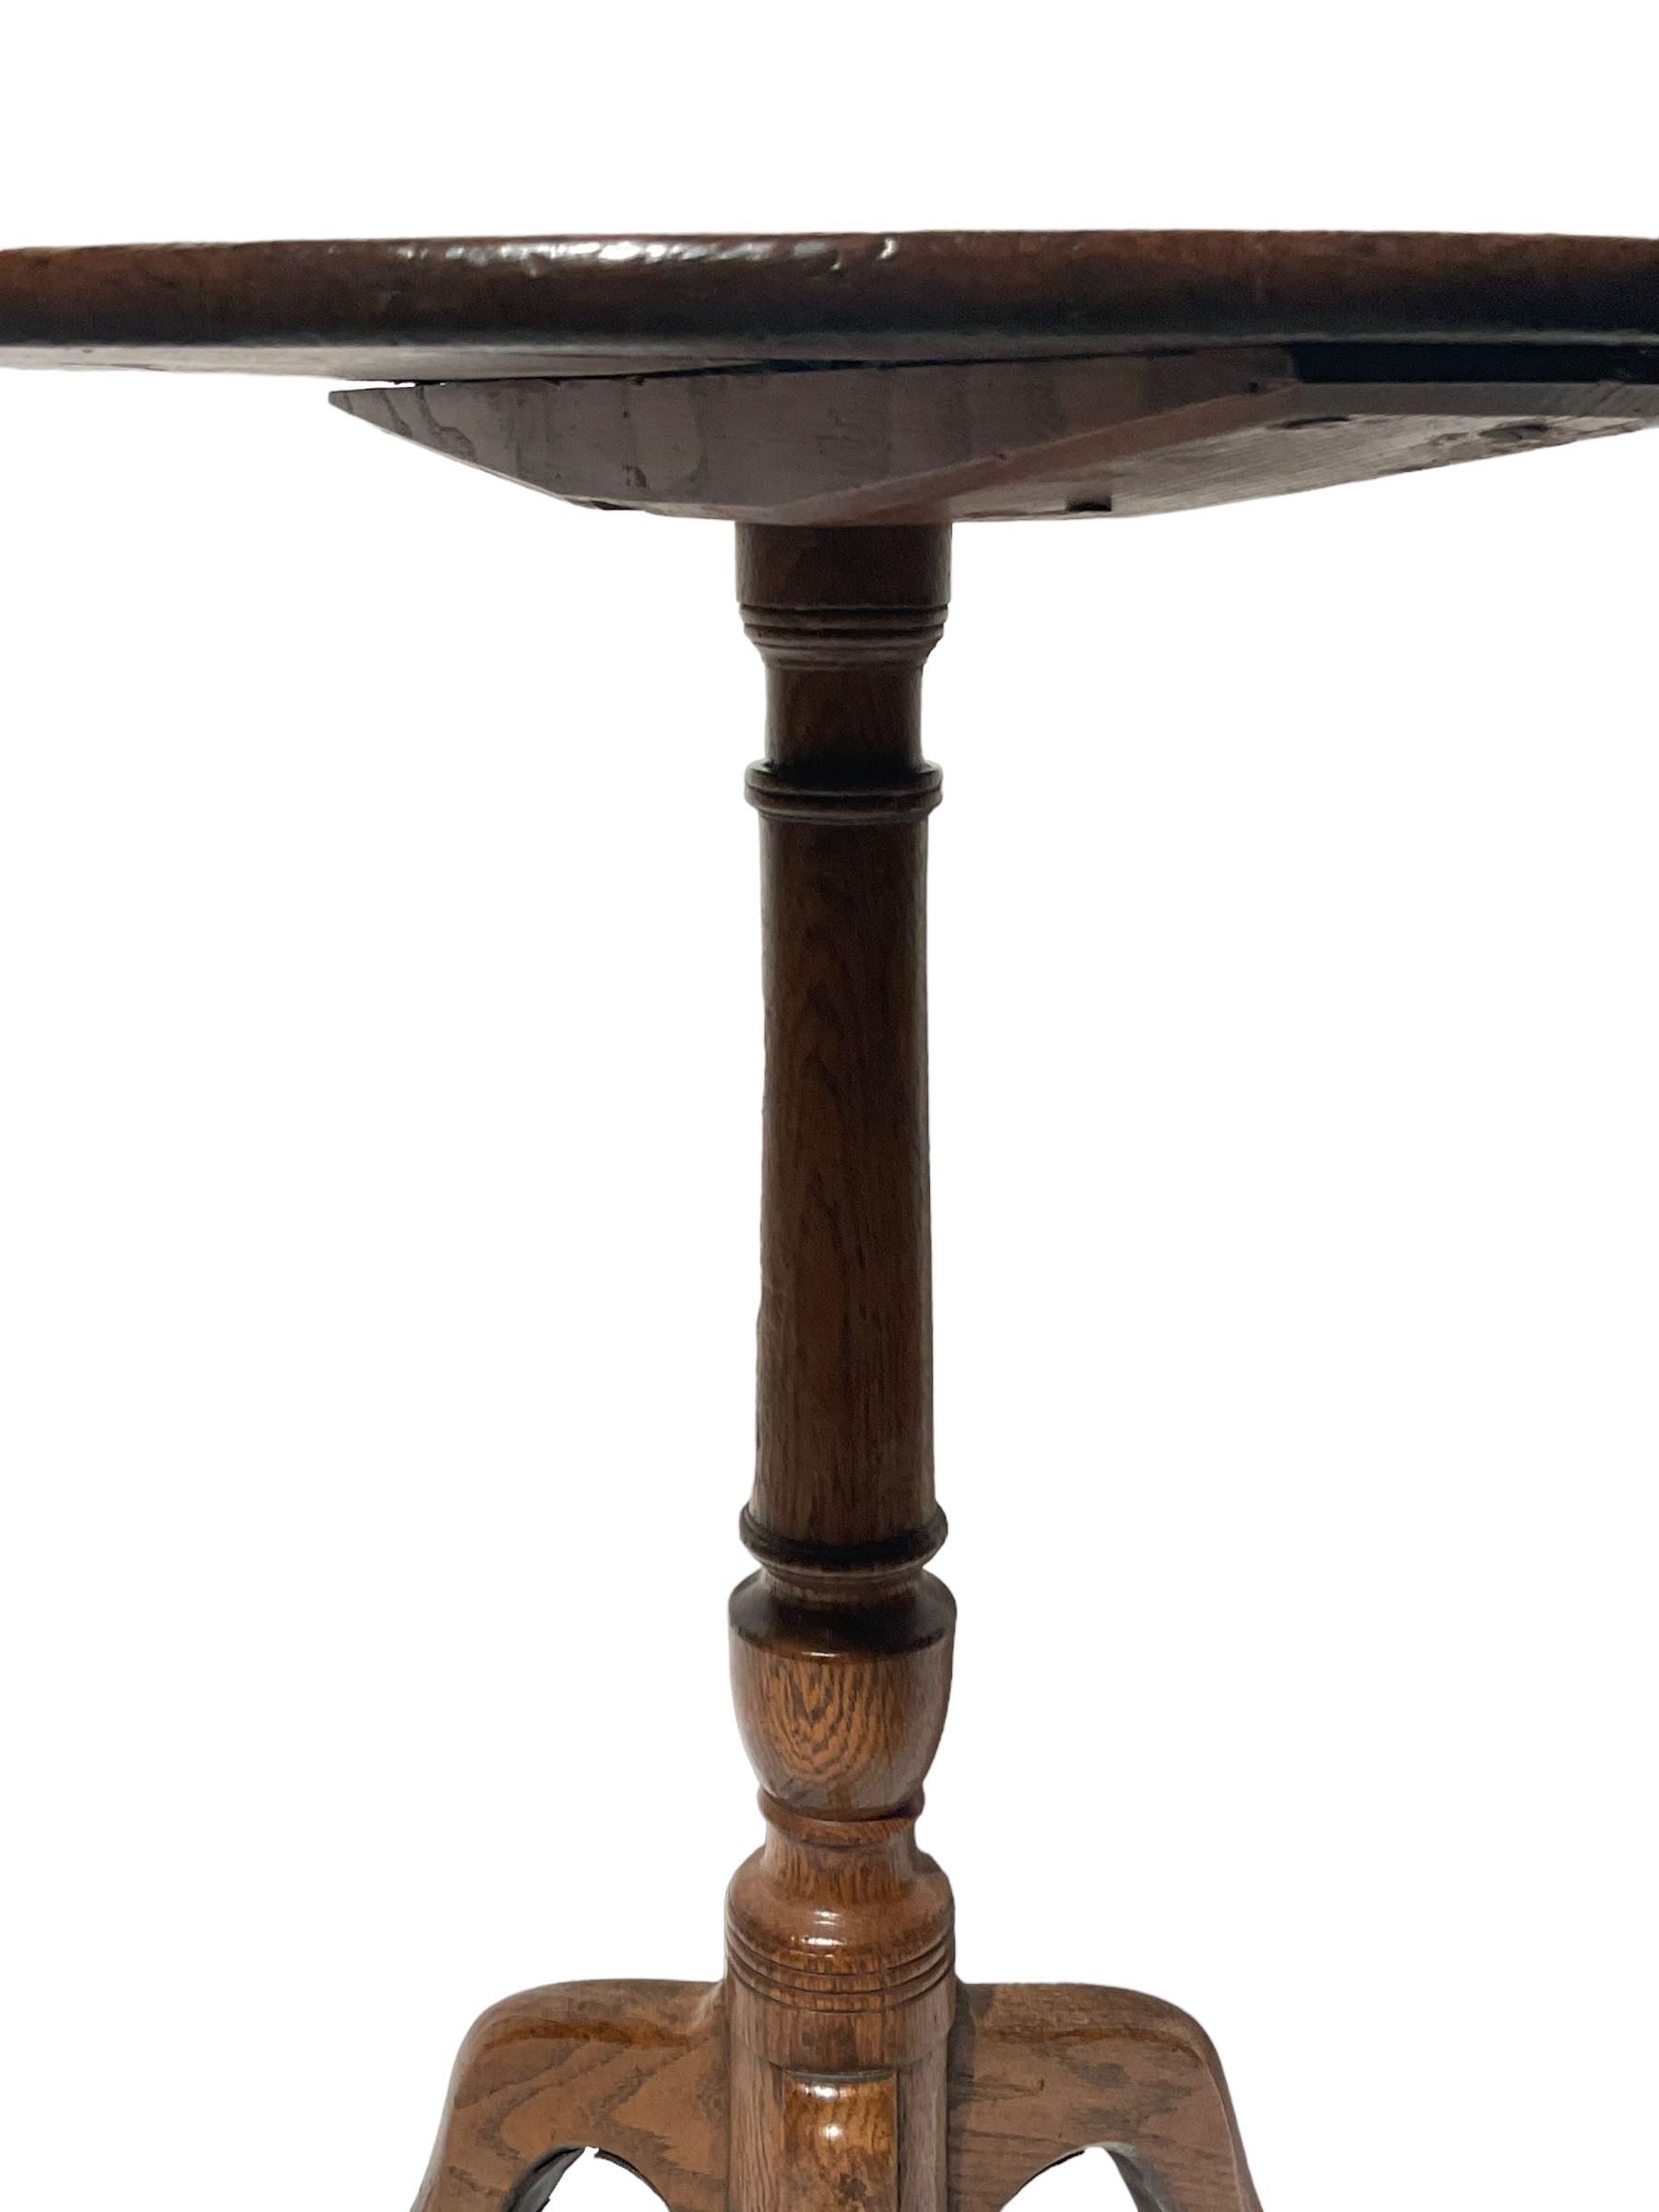 George III oak circular tripod table - Image 3 of 4